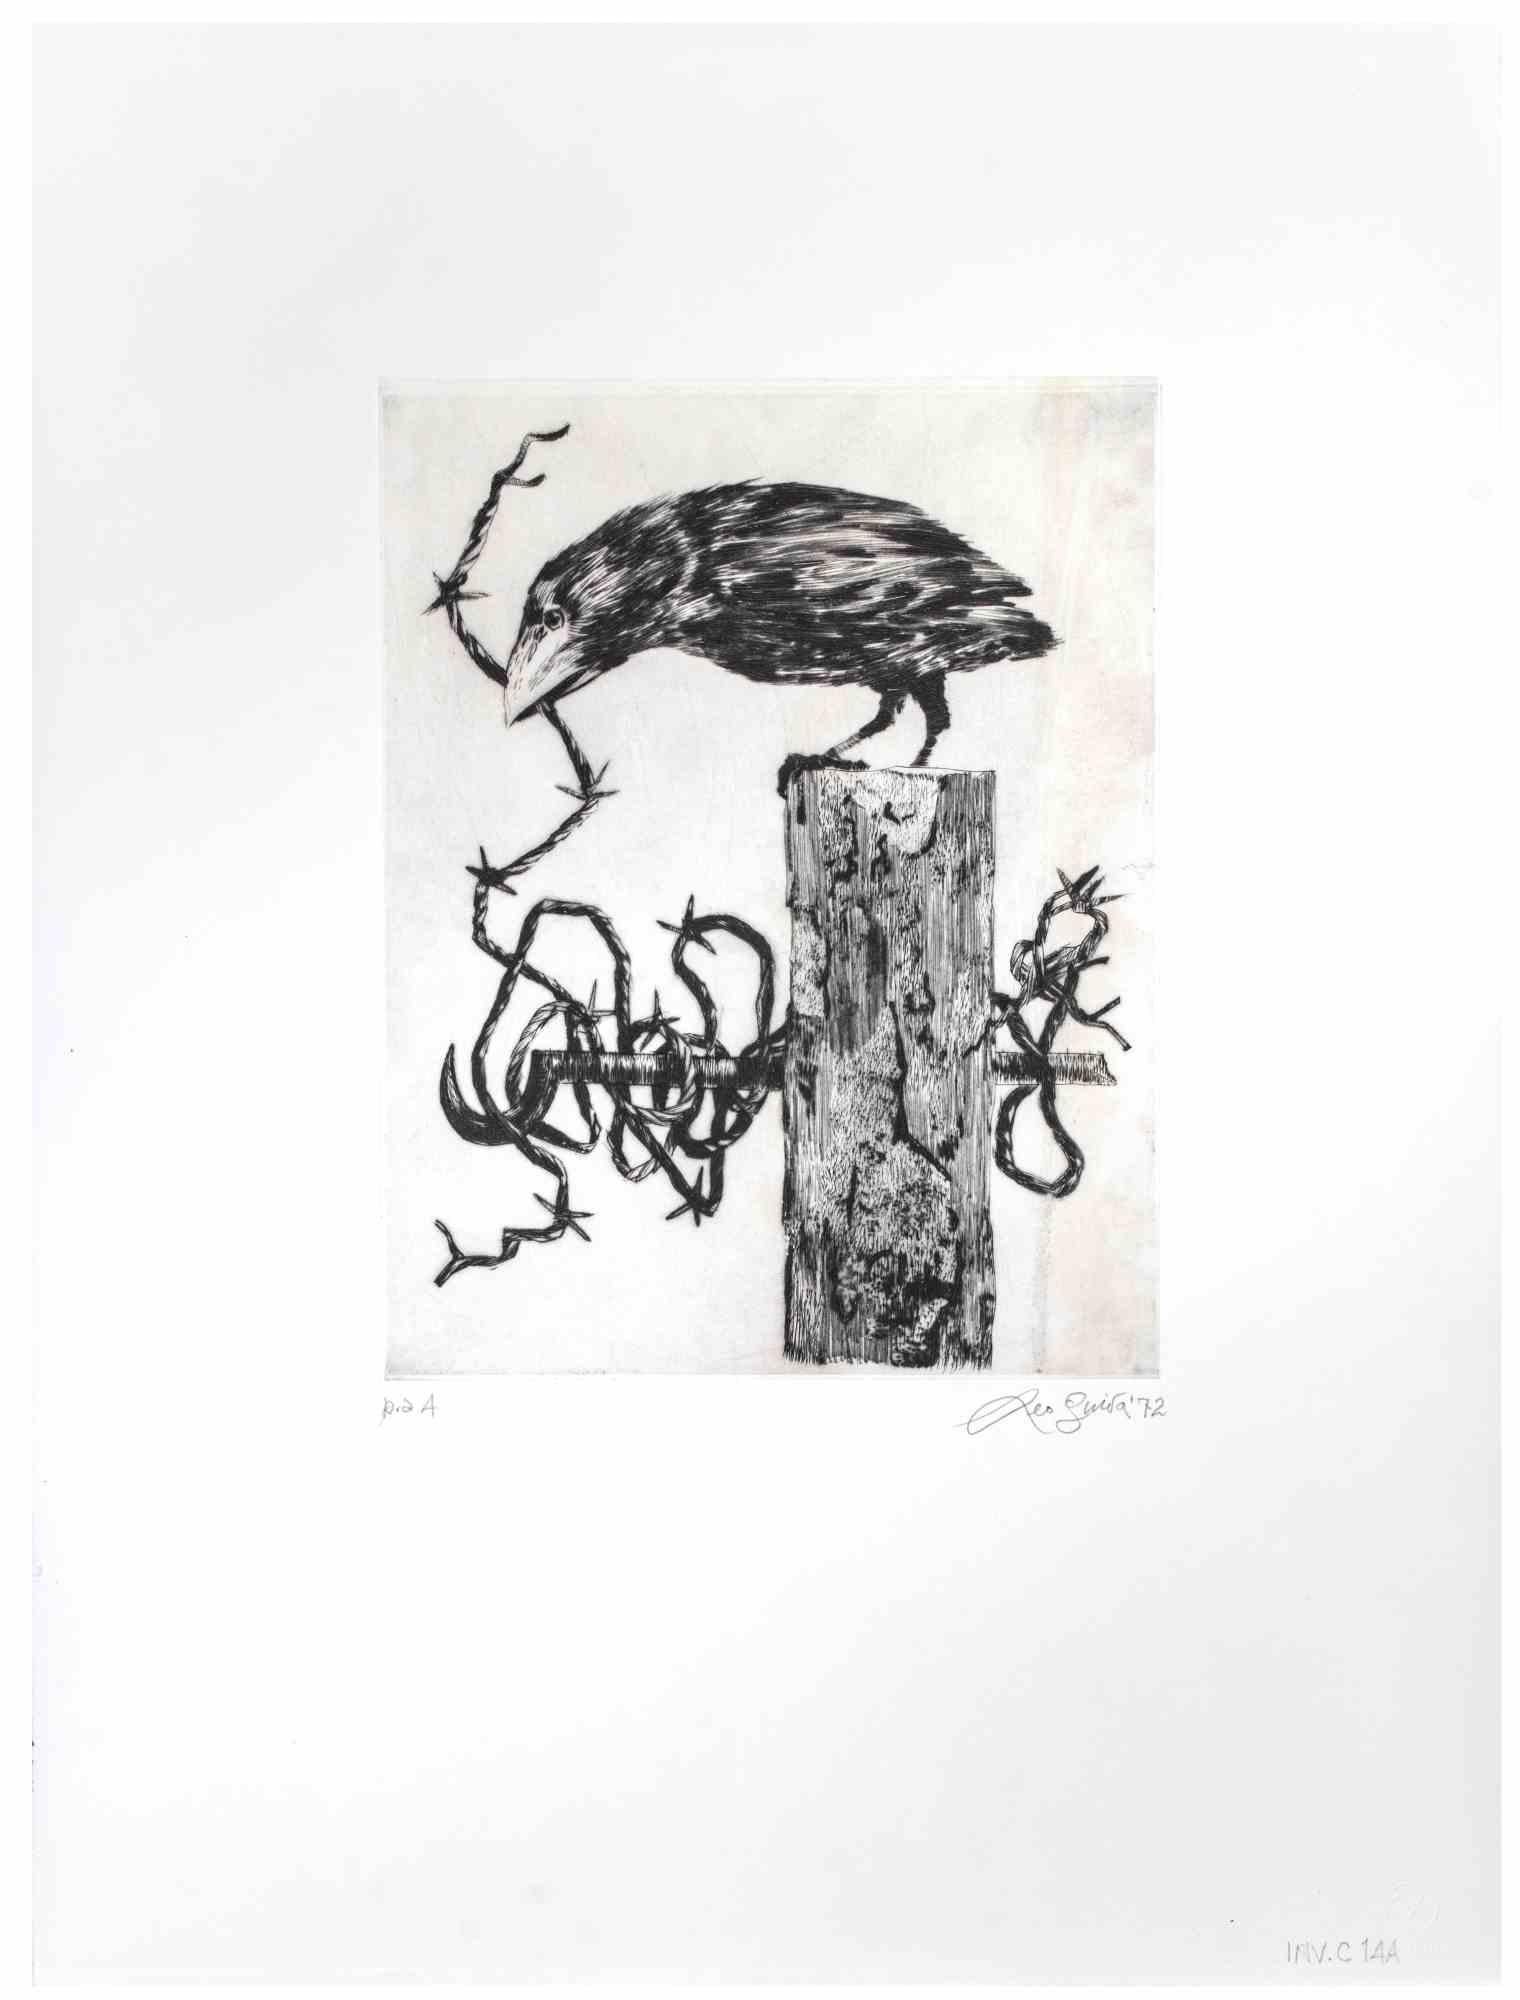 Crow ist ein Kunstwerk des zeitgenössischen italienischen Künstlers  Leo Guida (1992 - 2017) im Jahr 1972.

Original-Radierung in Schwarz-Weiß auf Papier.

Rechts unten am Rand handsigniert, datiert, Probedruck des Künstlers.

Sehr guter